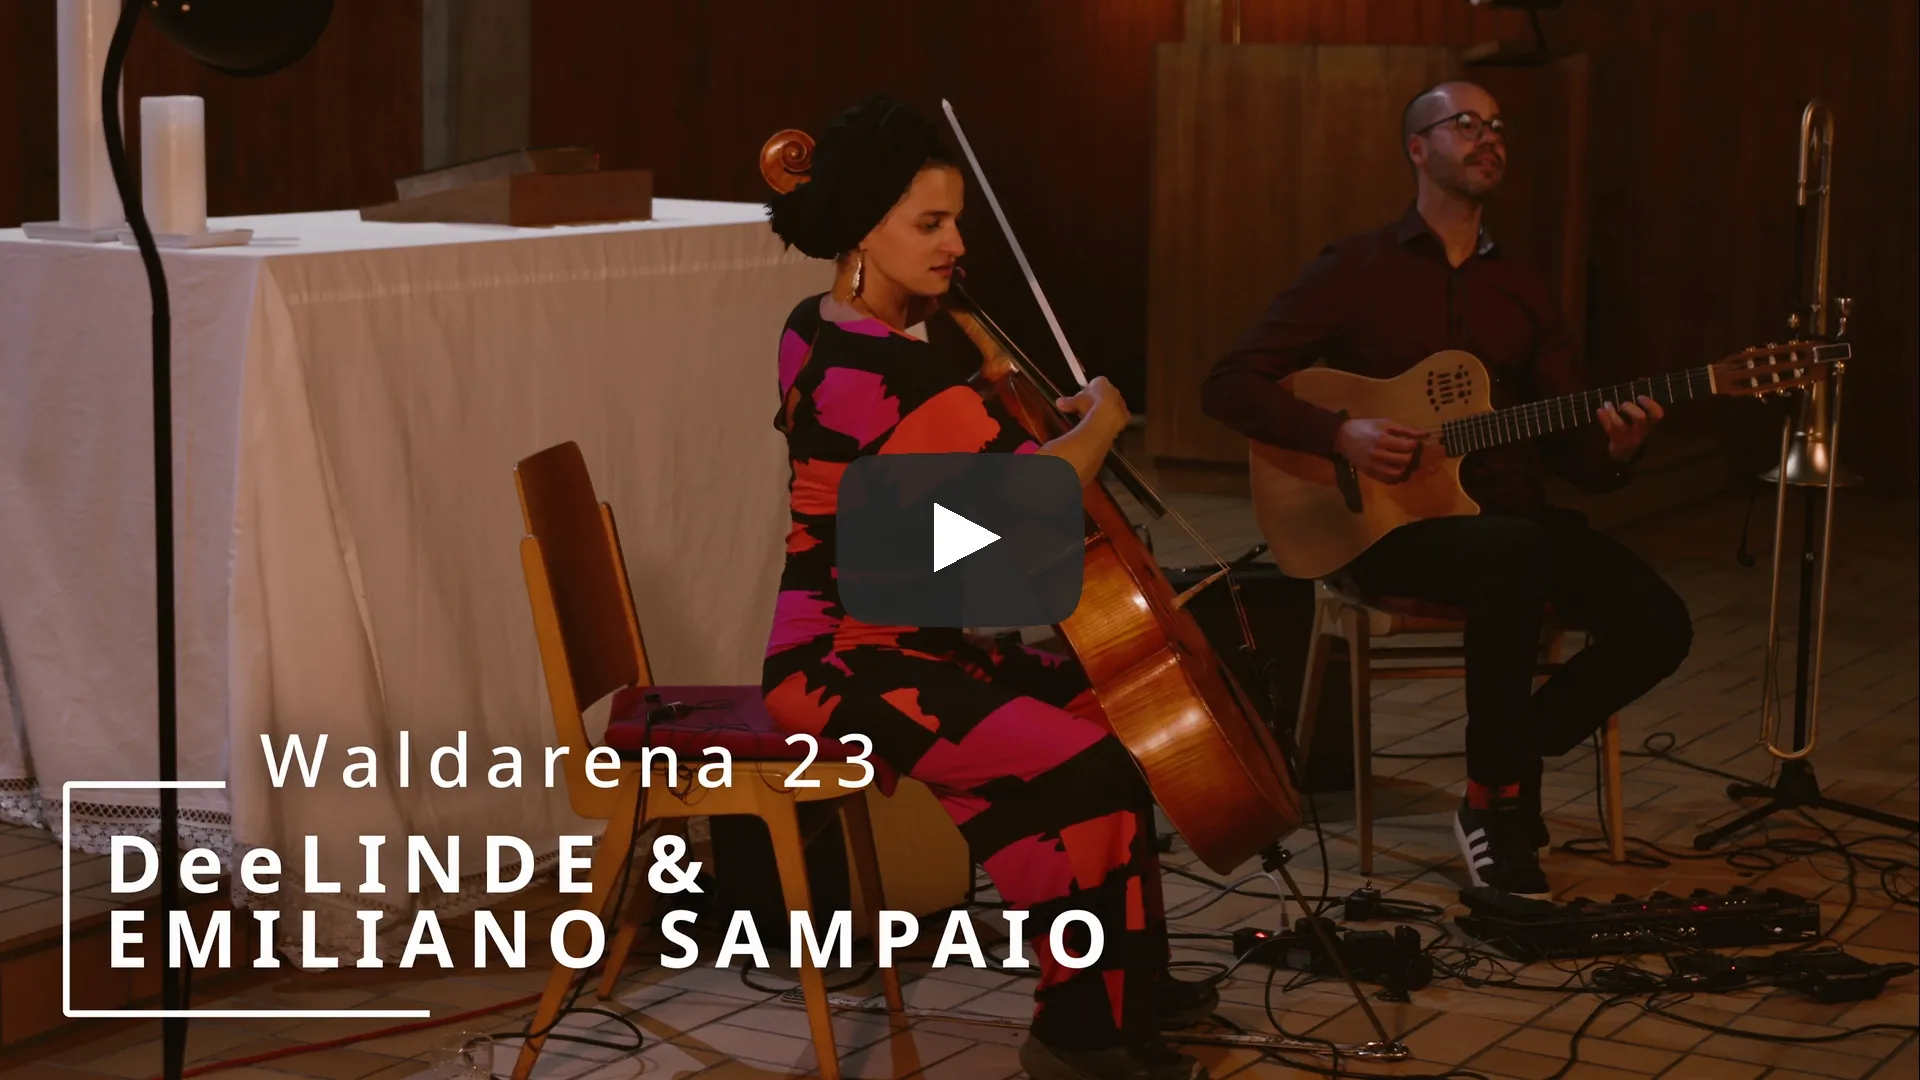 04. Aug 23 - DeeLINDE & EMILIANO SAMPAIO